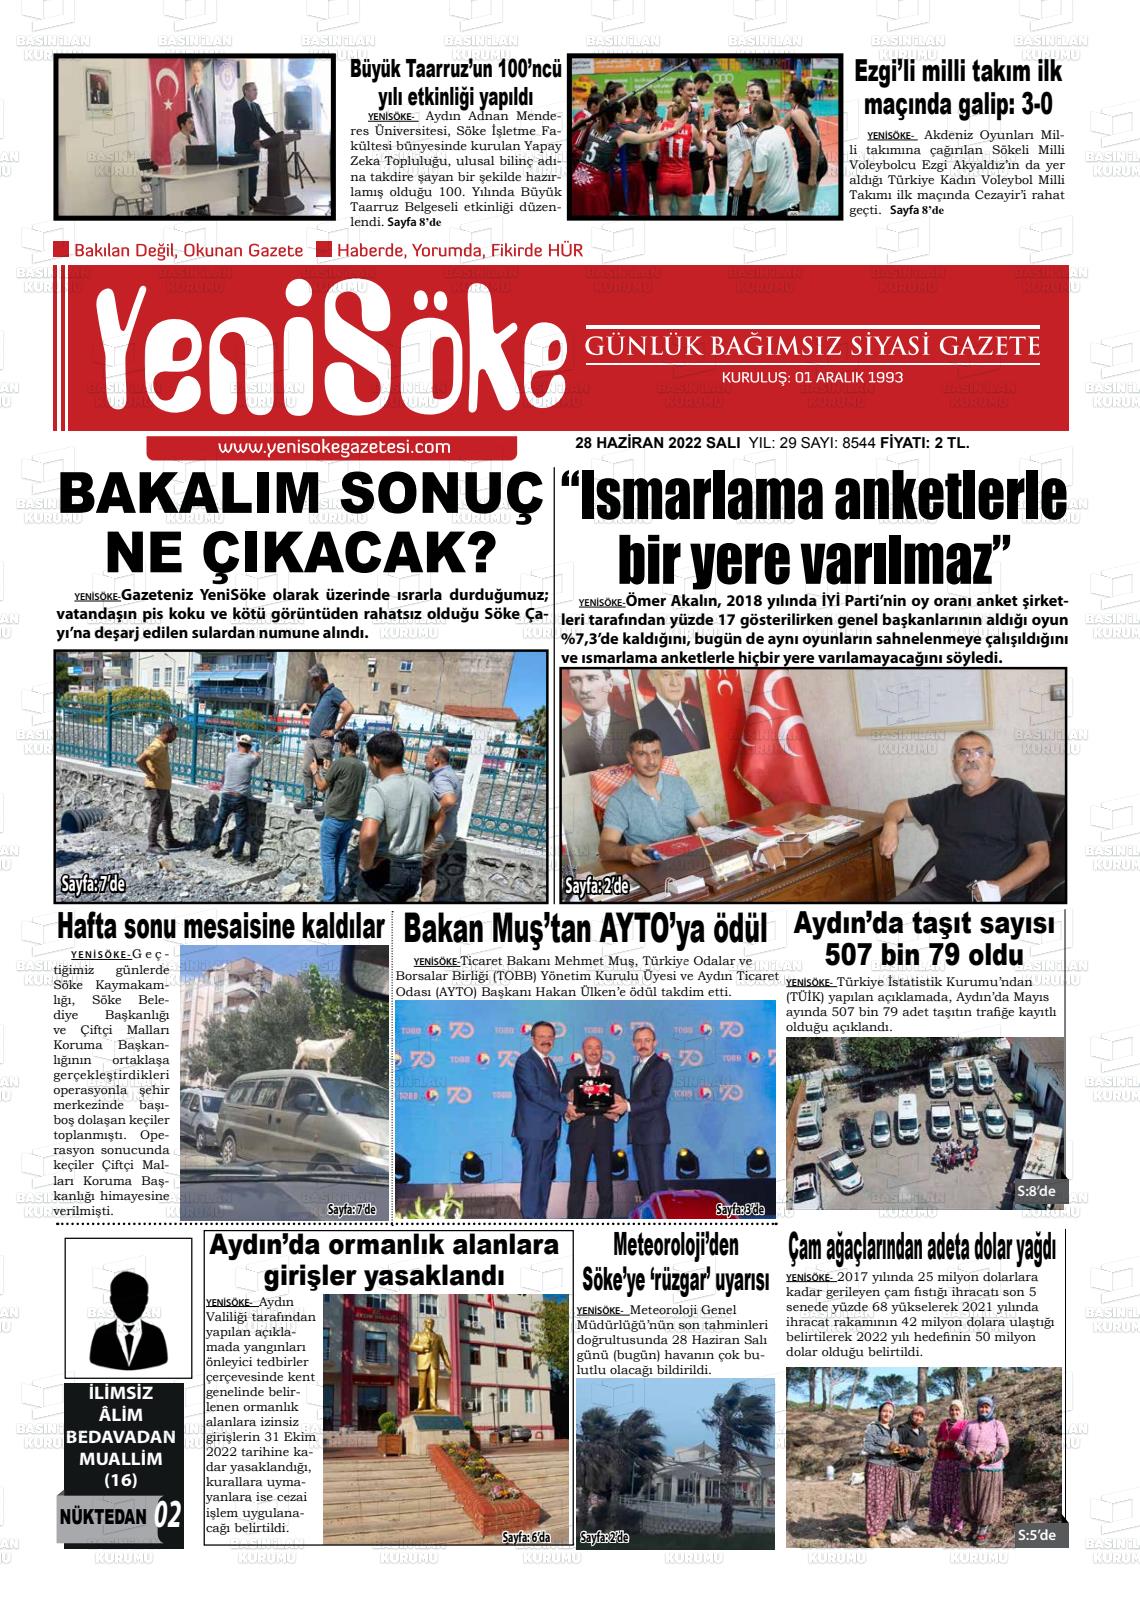 28 Haziran 2022 Yeni Söke Gazete Manşeti